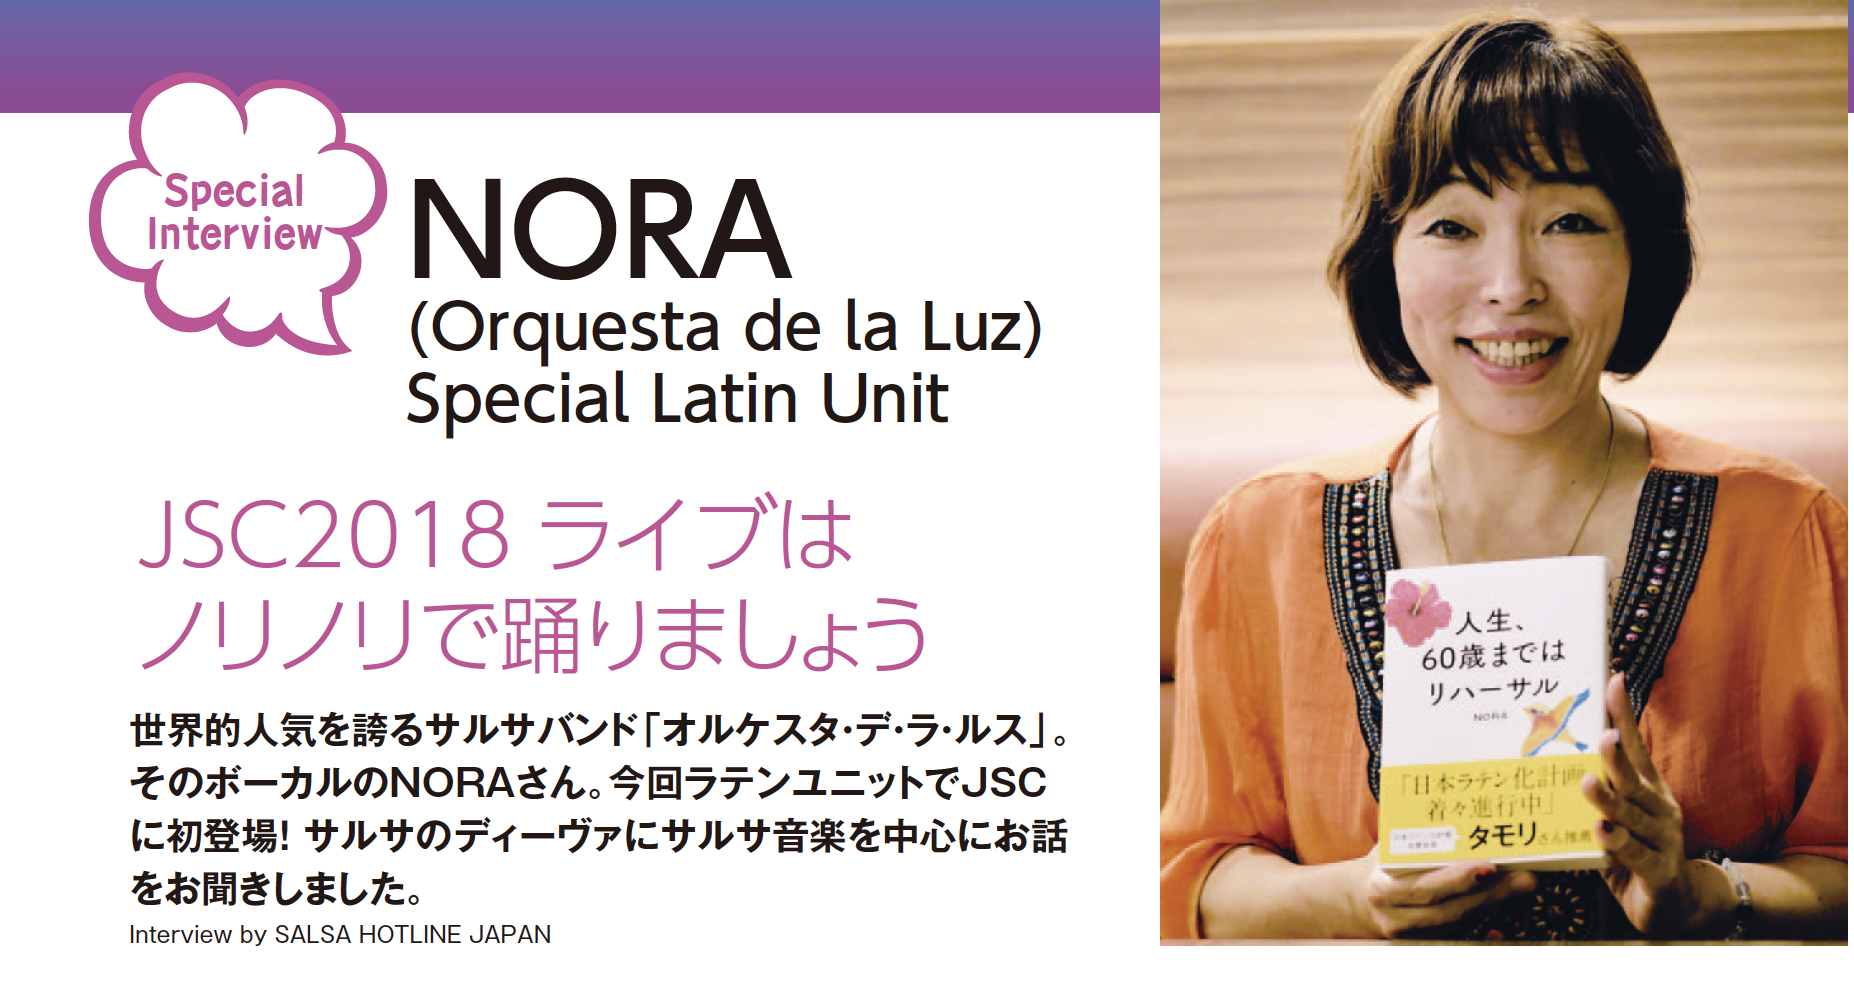 NORA (Orquesta de la Luz) Special Latin Unit